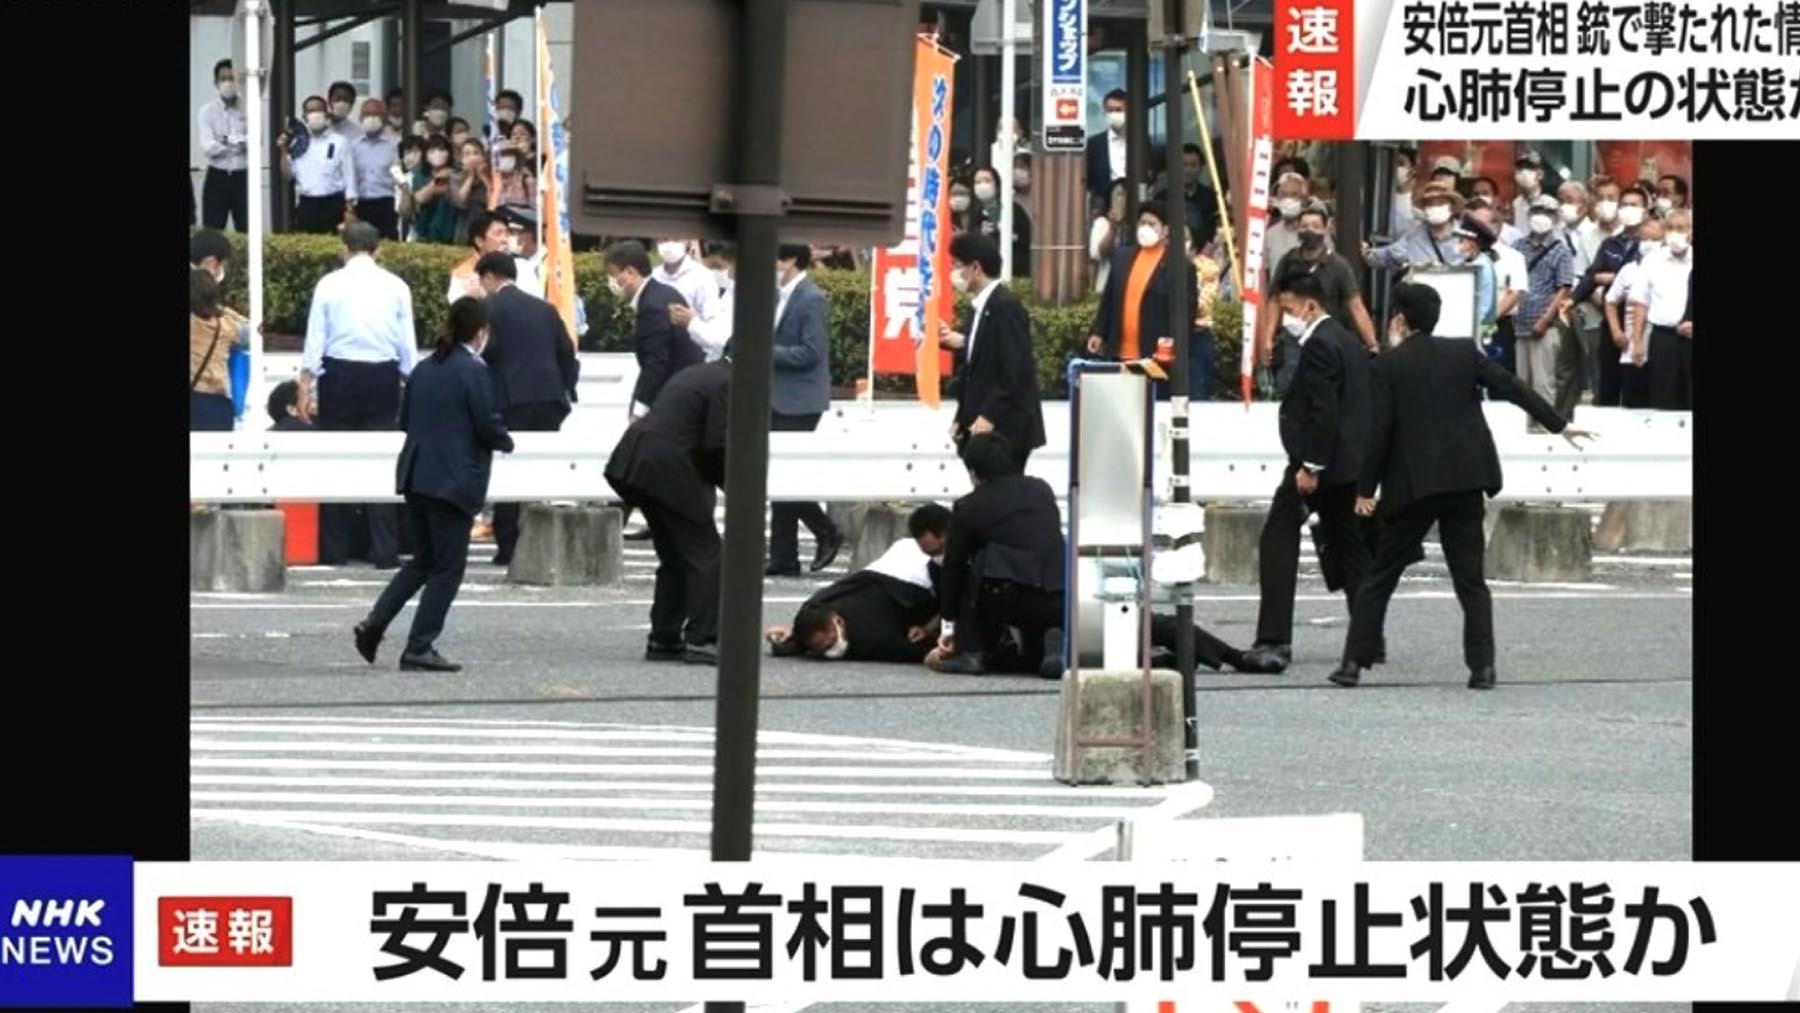 El ex presidente japonés herido tras recibir un disparo (NHK News).